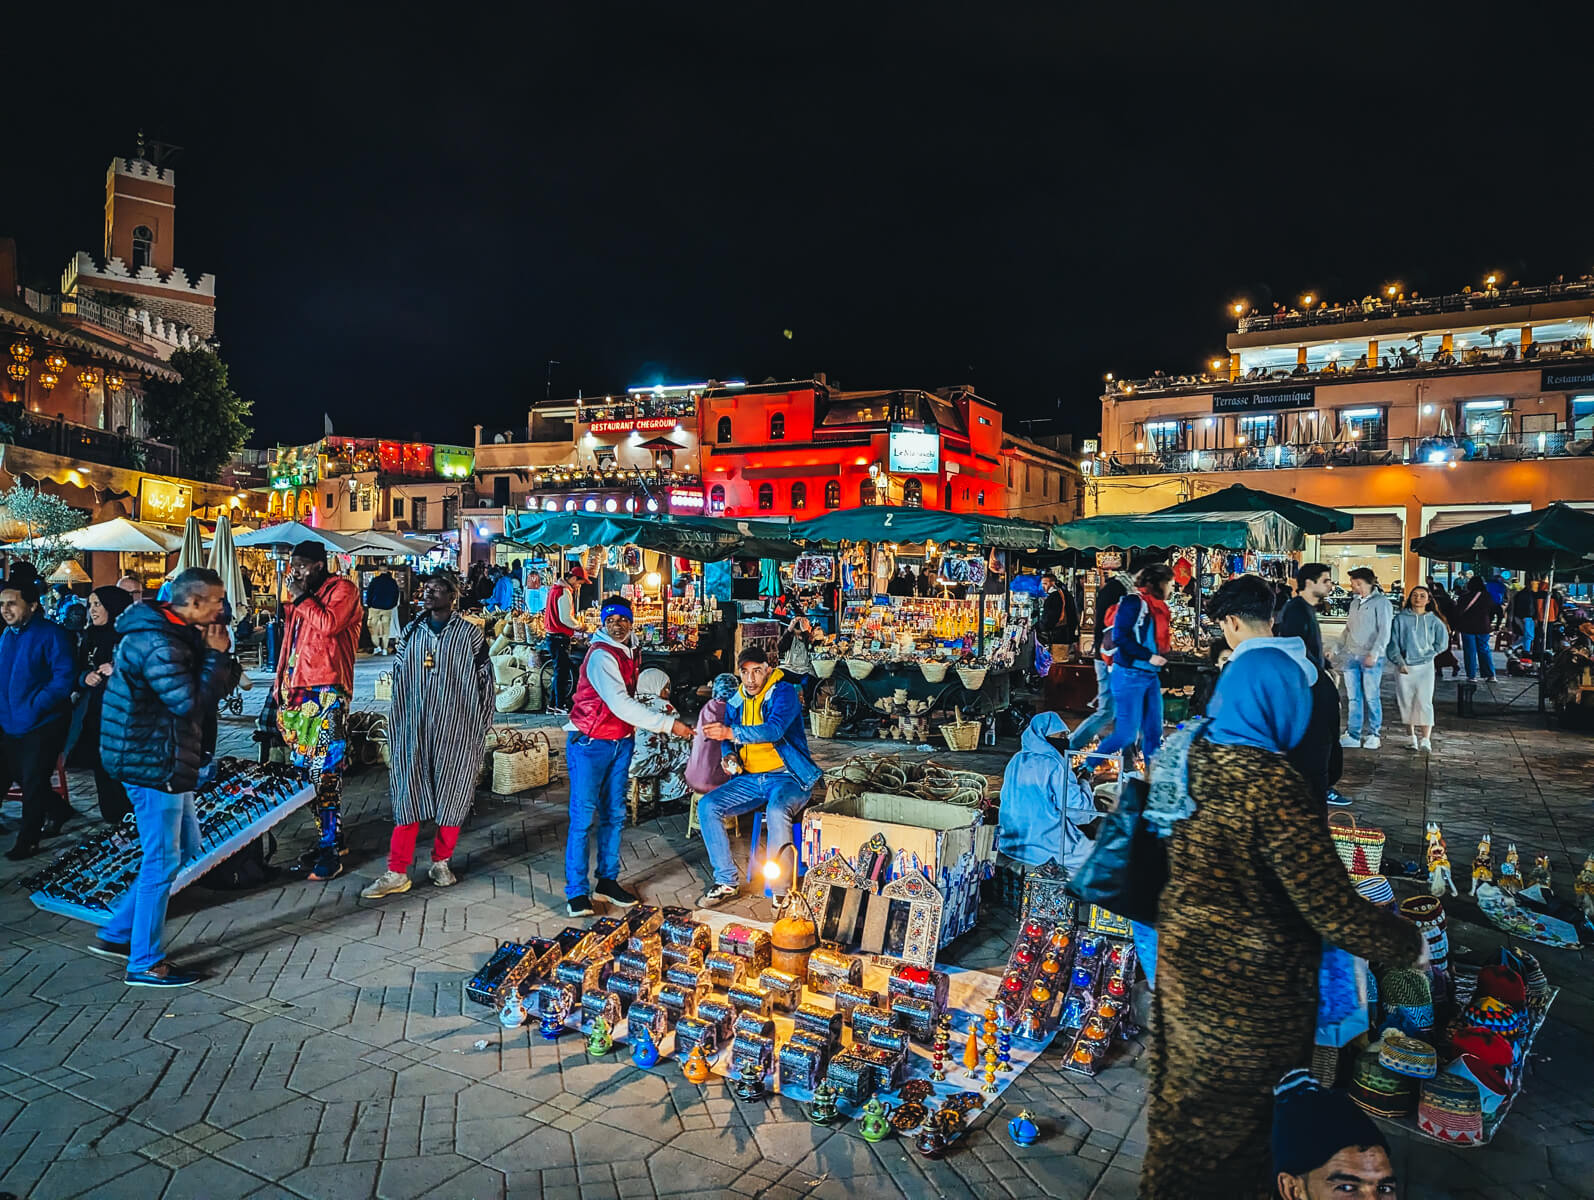 Venders in Jemma El Fna Square in Marrakech